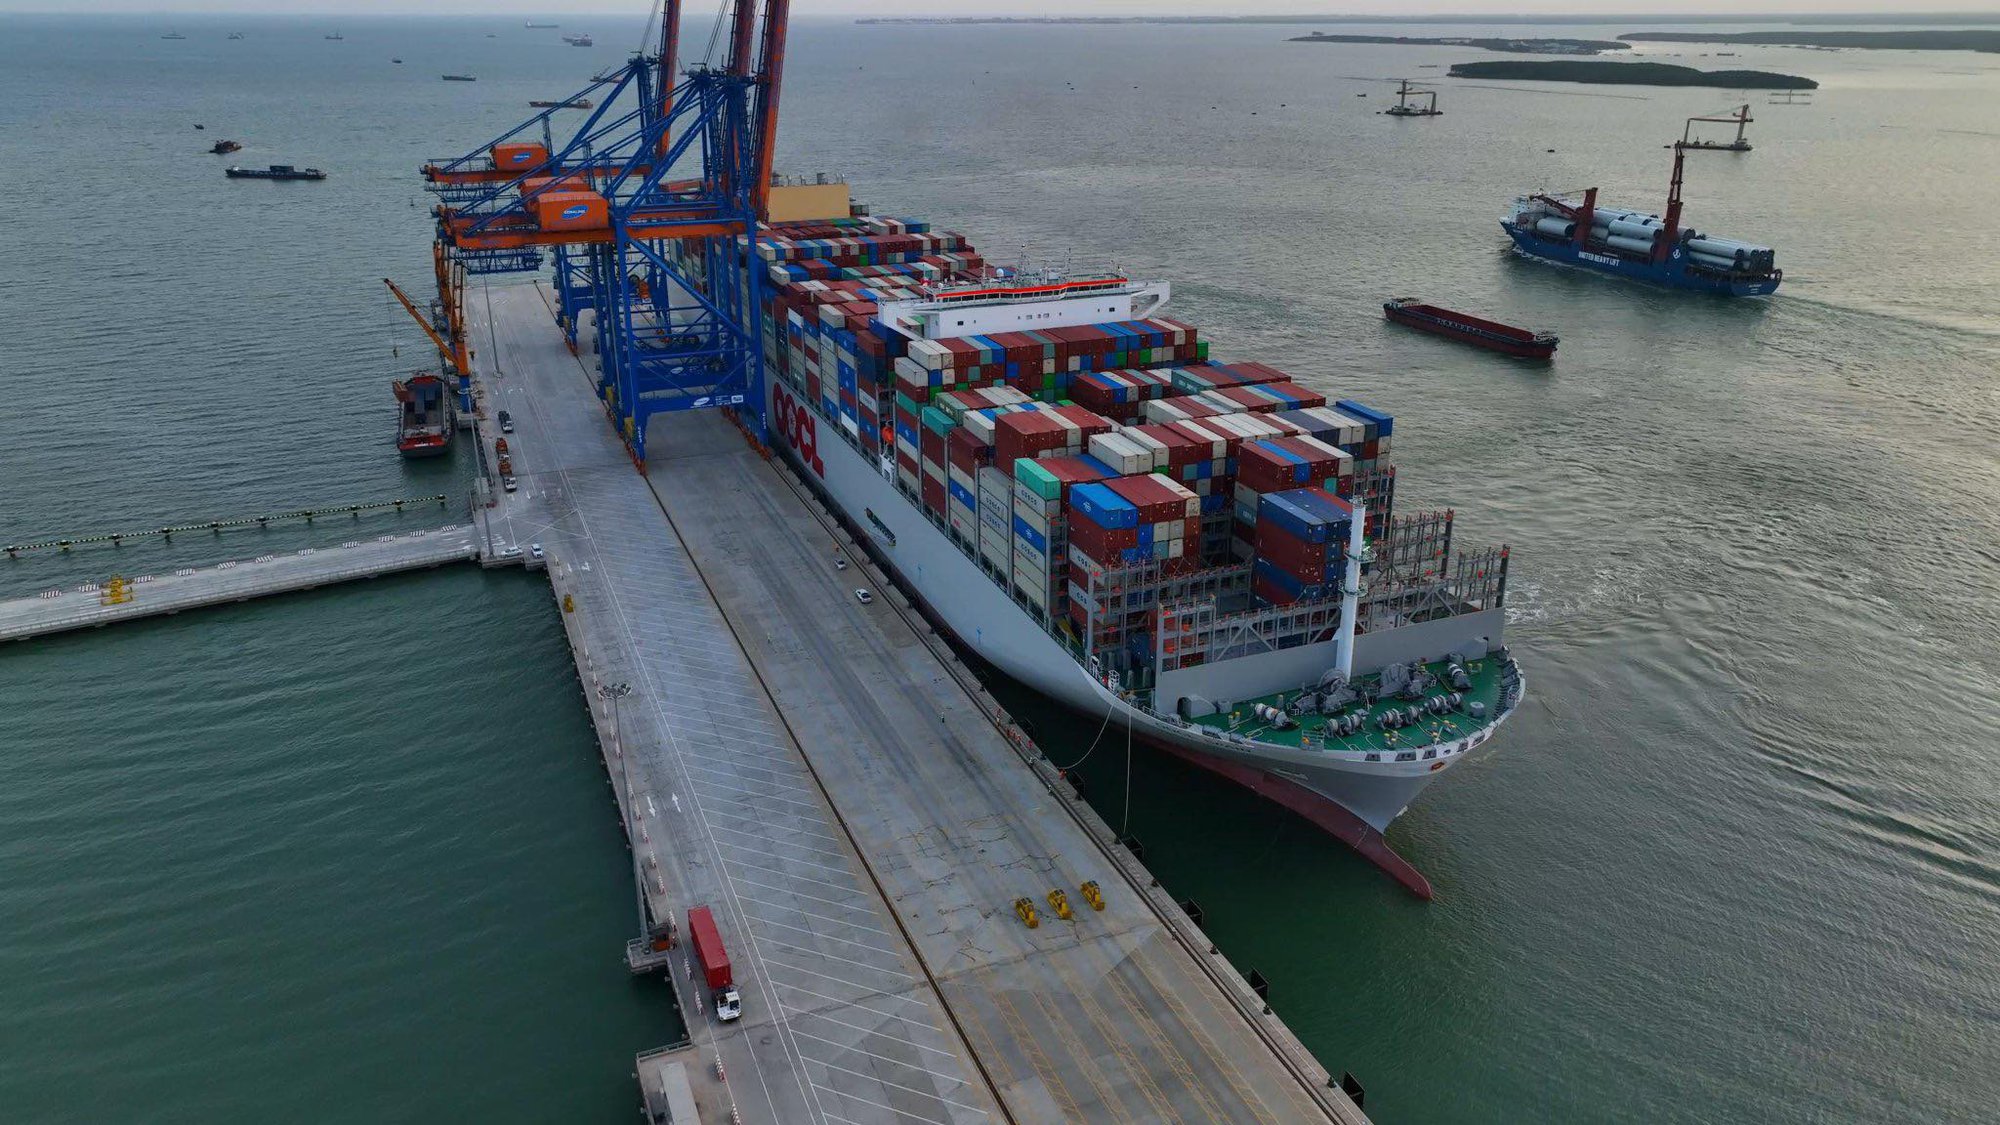 Cận cảnh siêu tàu container lớn nhất thế giới tại Bà Rịa - Vũng Tàu - Ảnh 4.